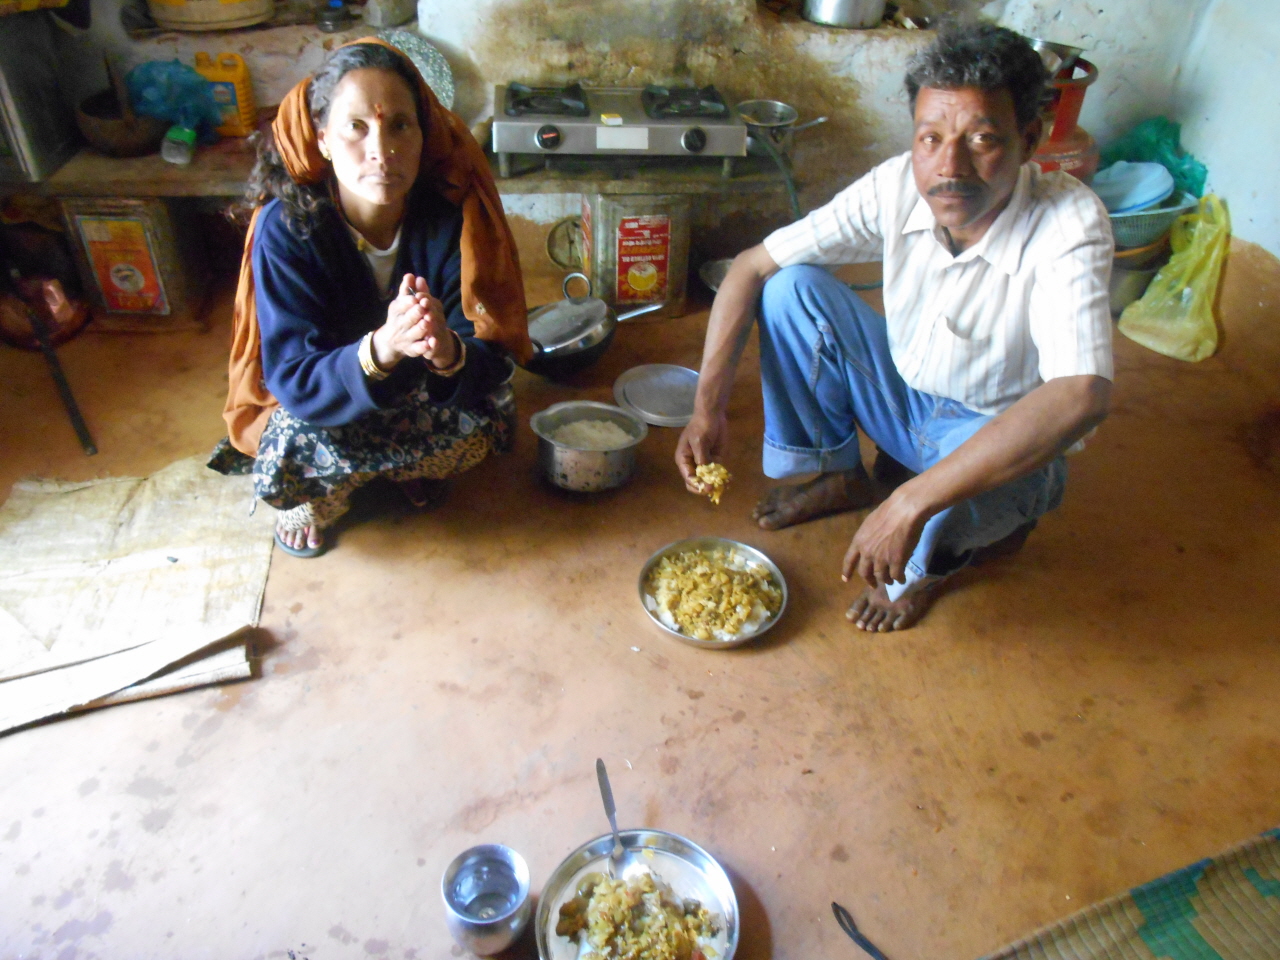 허름한 움막집에서 내게 한 끼 식사를 베푼 네팔 부부. 두 딸과 함께 생활하는 사내는 코사니에서 관광객들을 상대로 일하고 있었다.